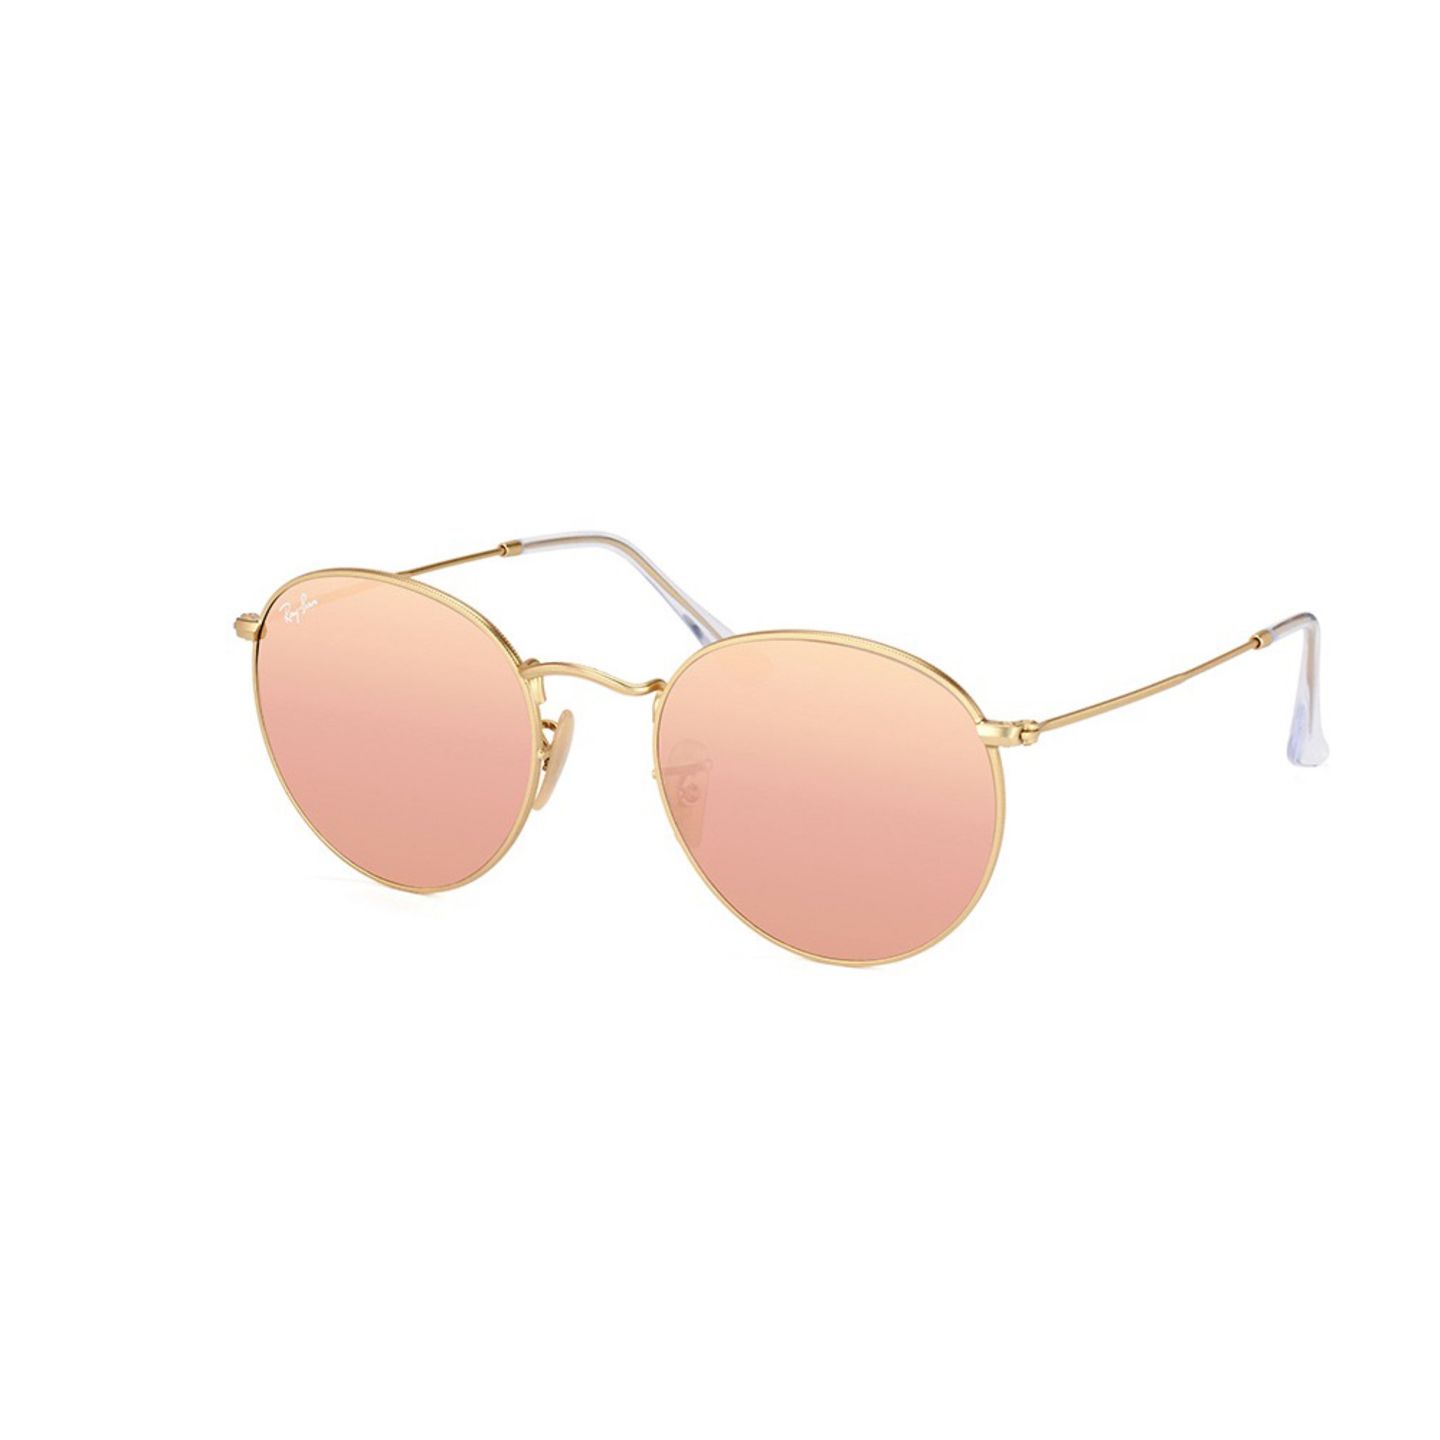 Voll angesagt: Sonnenbrillen mit verspiegelten und runden Gläsern. Dieses Modell ist erhältlich über Misterspex, um 146 Euro.